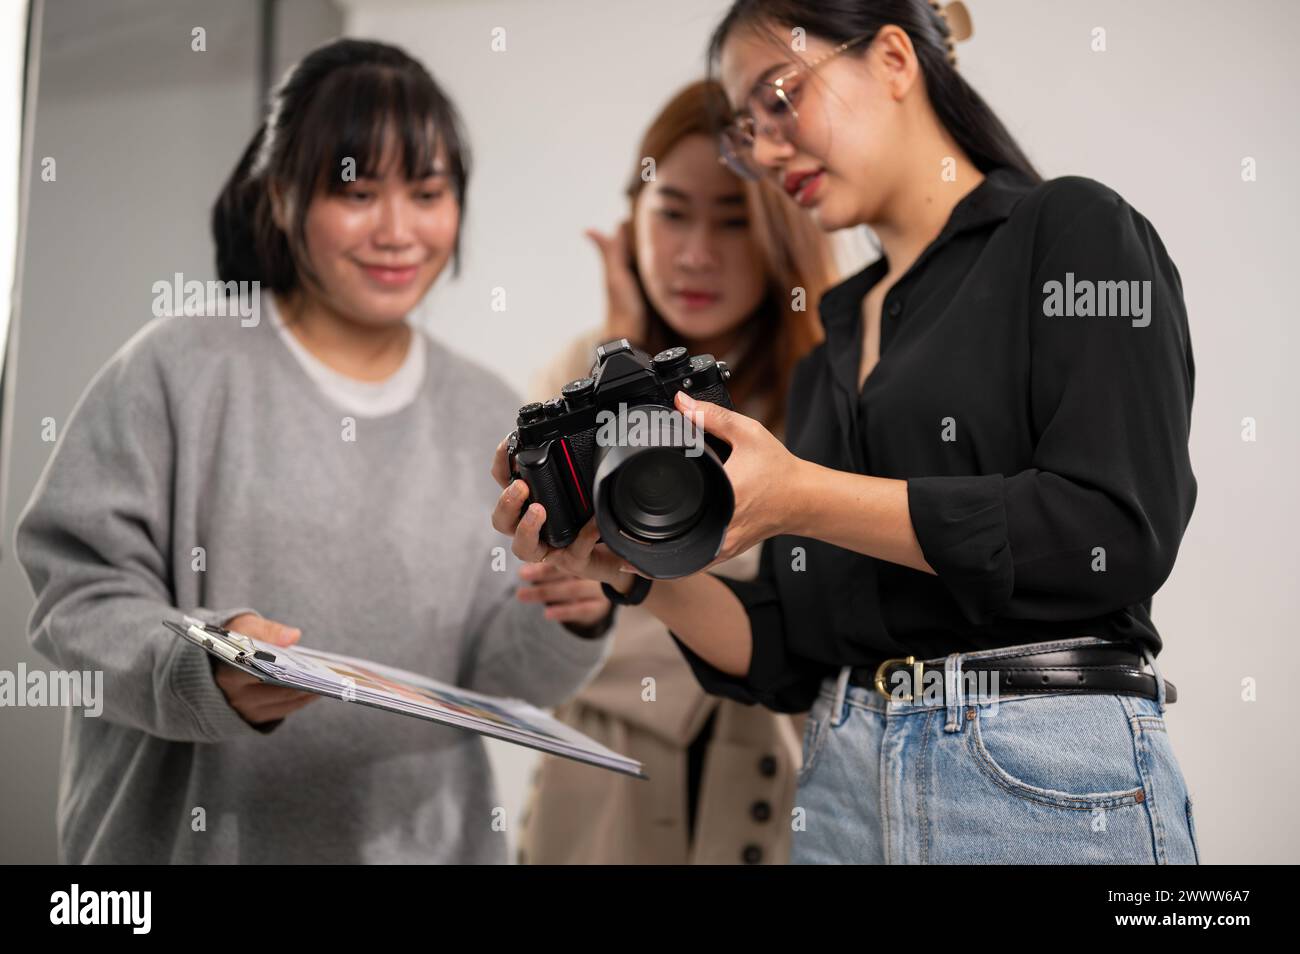 Eine professionelle asiatische Fotografin zeigt Bilder auf ihrer Kamera an Art Directors und arbeitet mit ihrem Team im Studio mit professionellem Licht Stockfoto